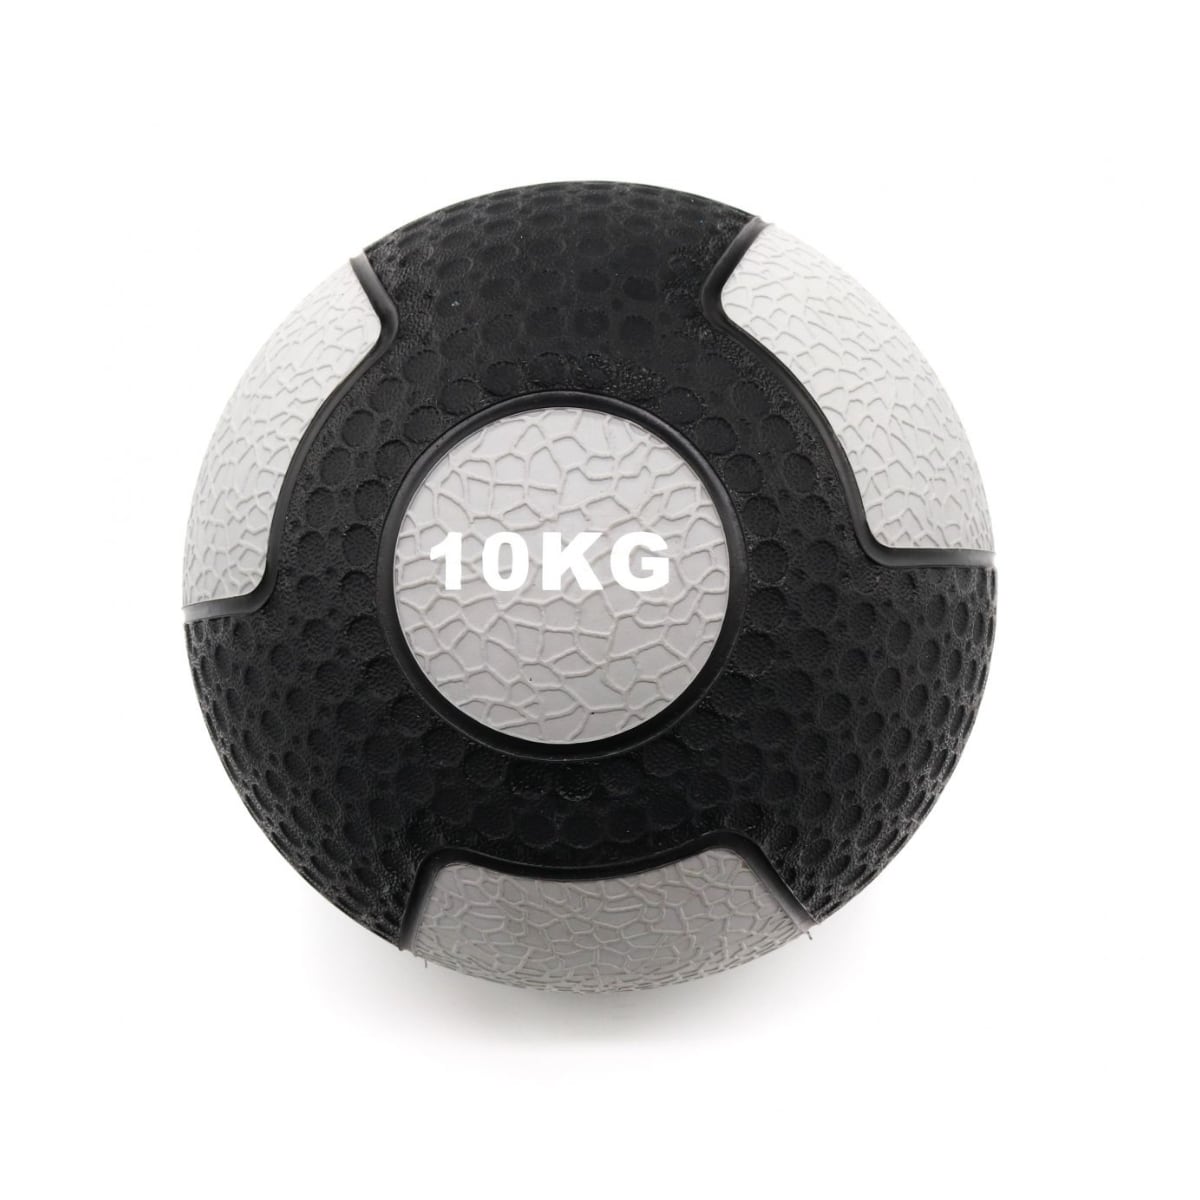 Brug American barbell AmericanBarbell Medicine Ball 10 kg til en forbedret oplevelse